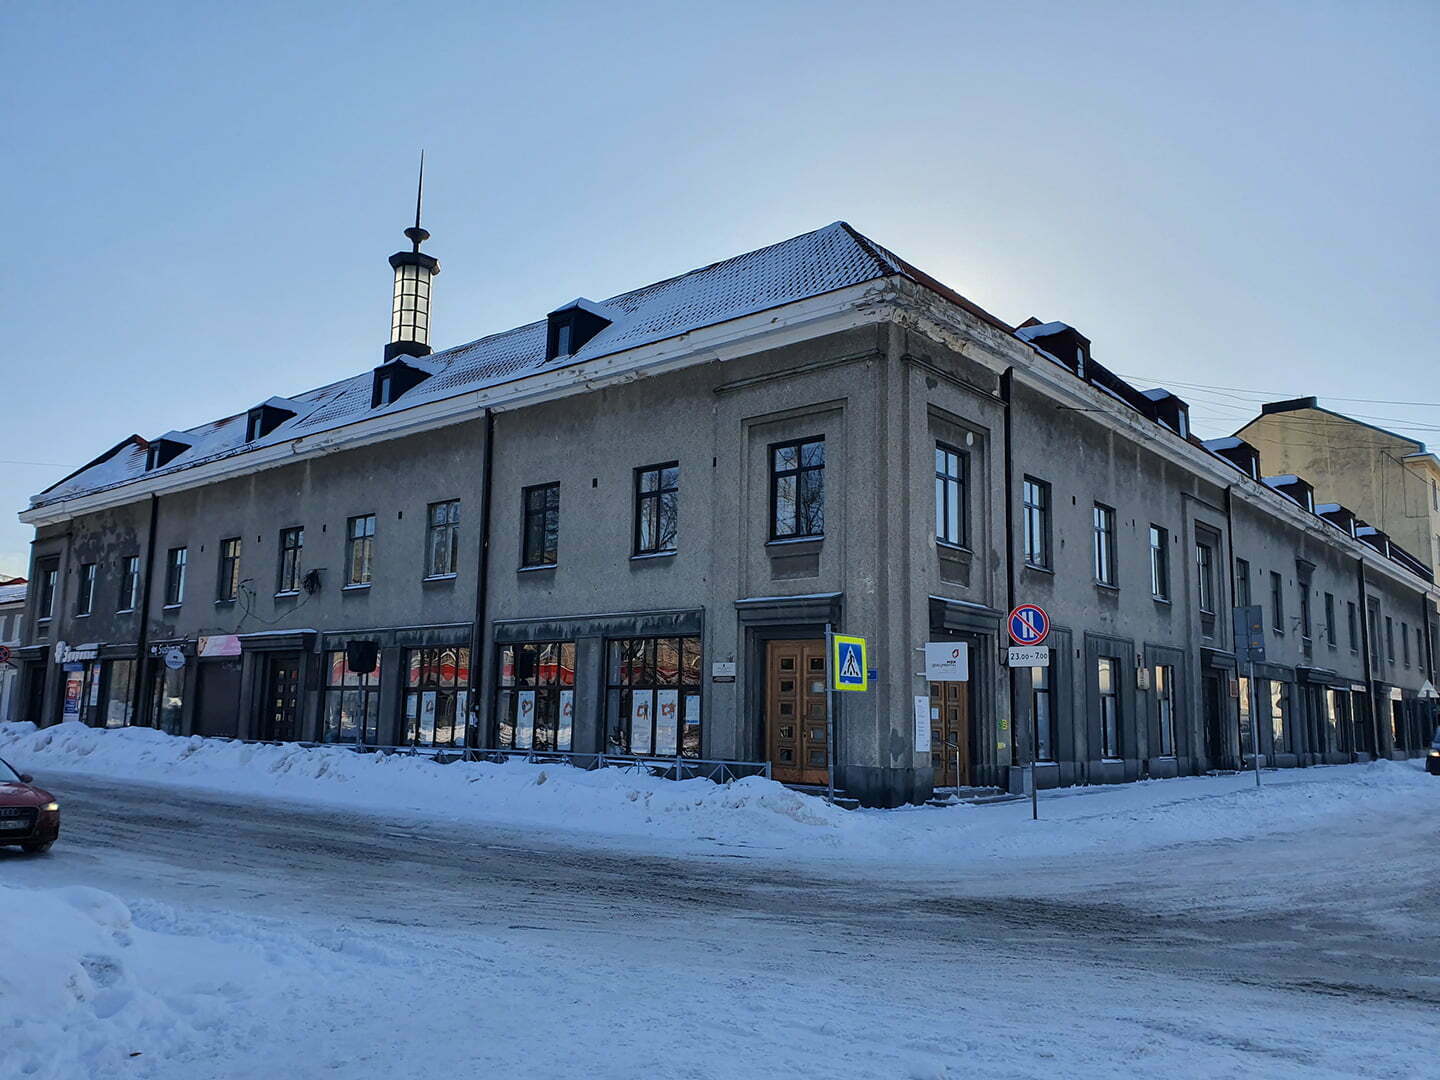 Хельсинский банк, 1936 год, архитектор Р.Финнеля, Сортавала